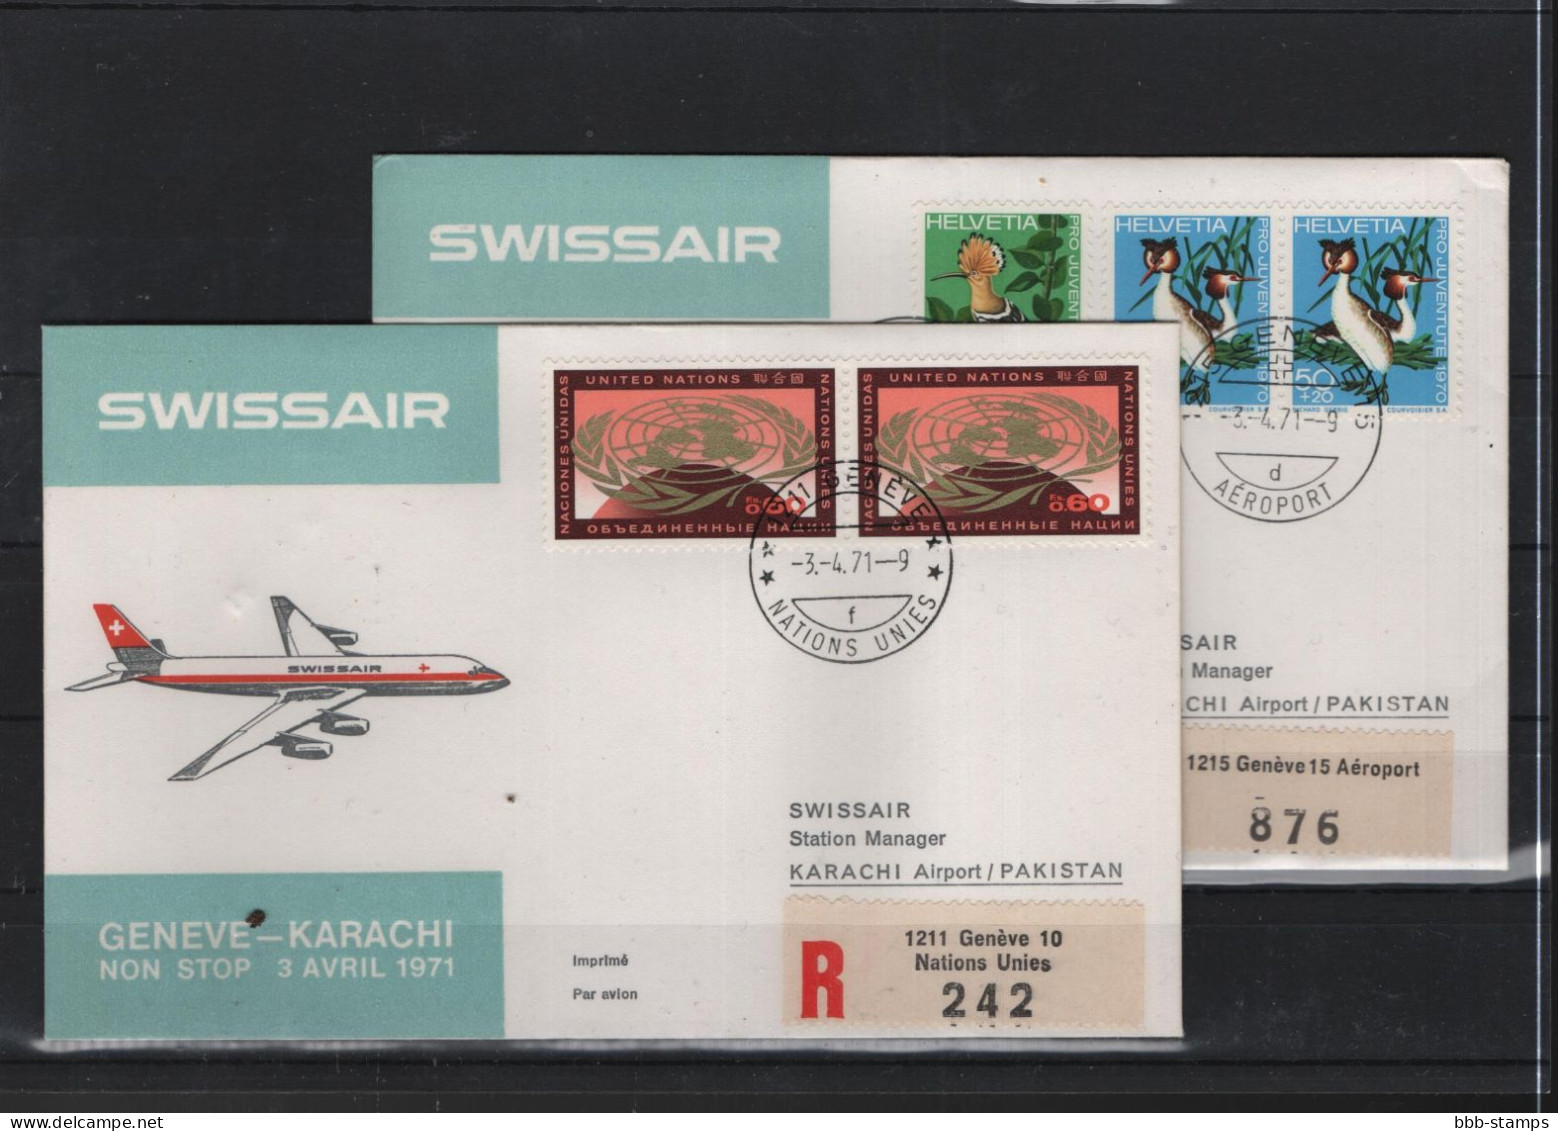 Schweiz Luftpost FFC Swissair 3.4.1971 Genf - Karachi - Erst- U. Sonderflugbriefe